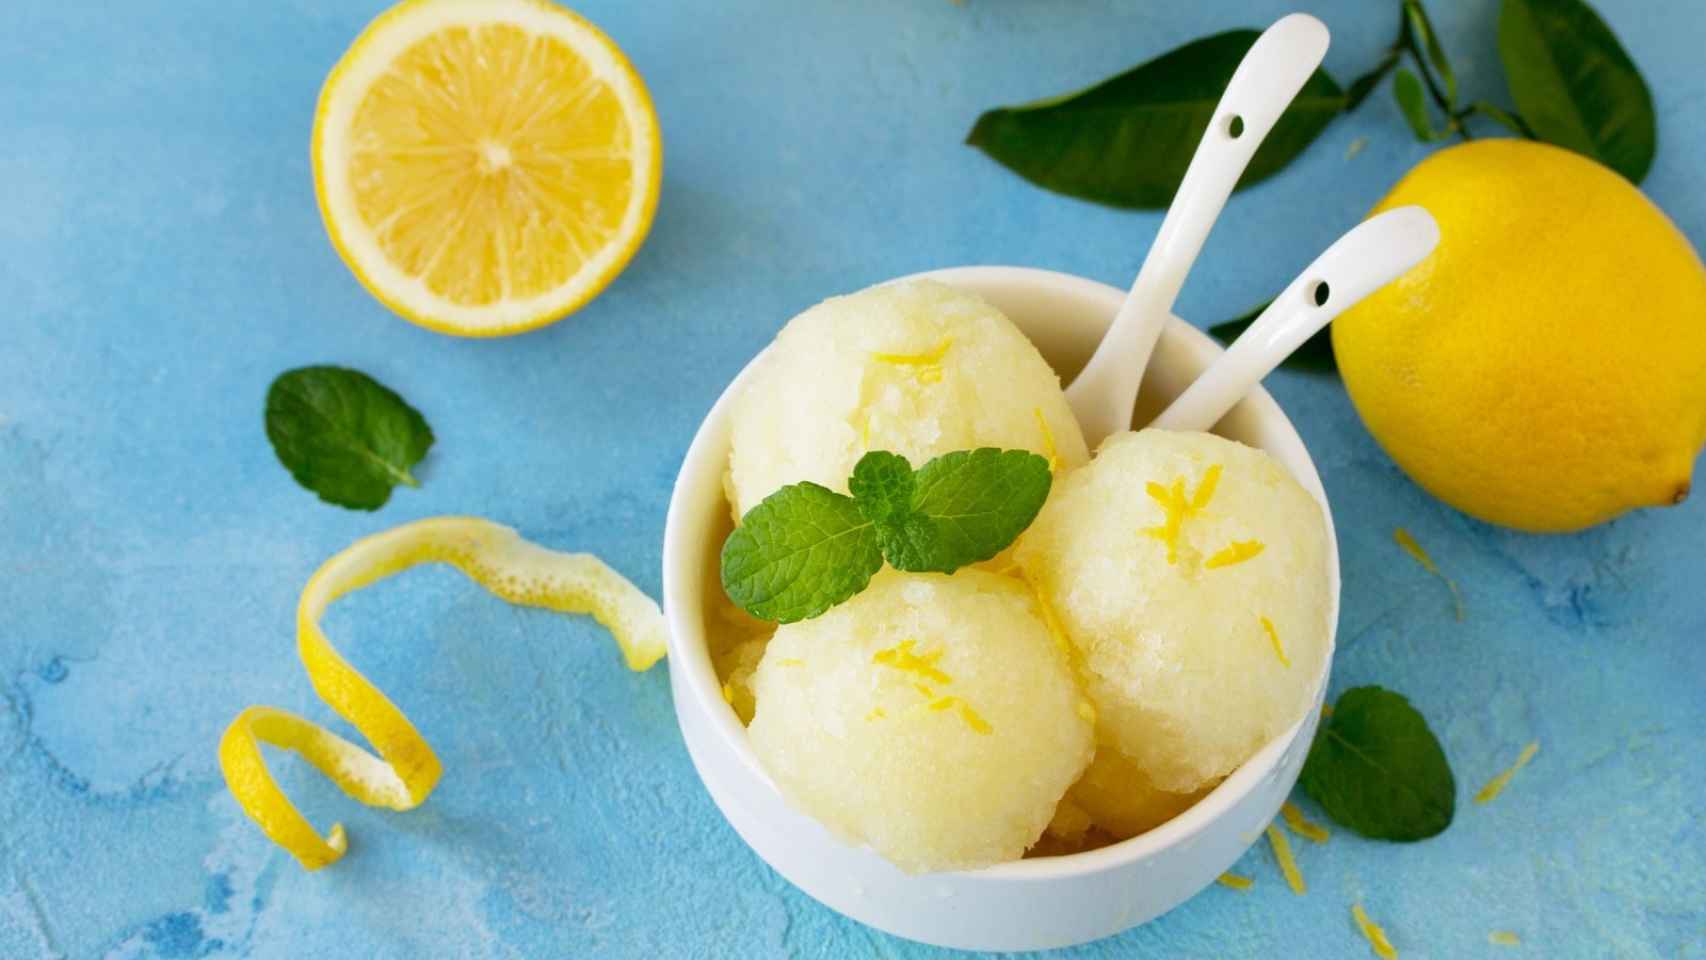 Sorbete de limón fácil, una receta ligera y refrescante